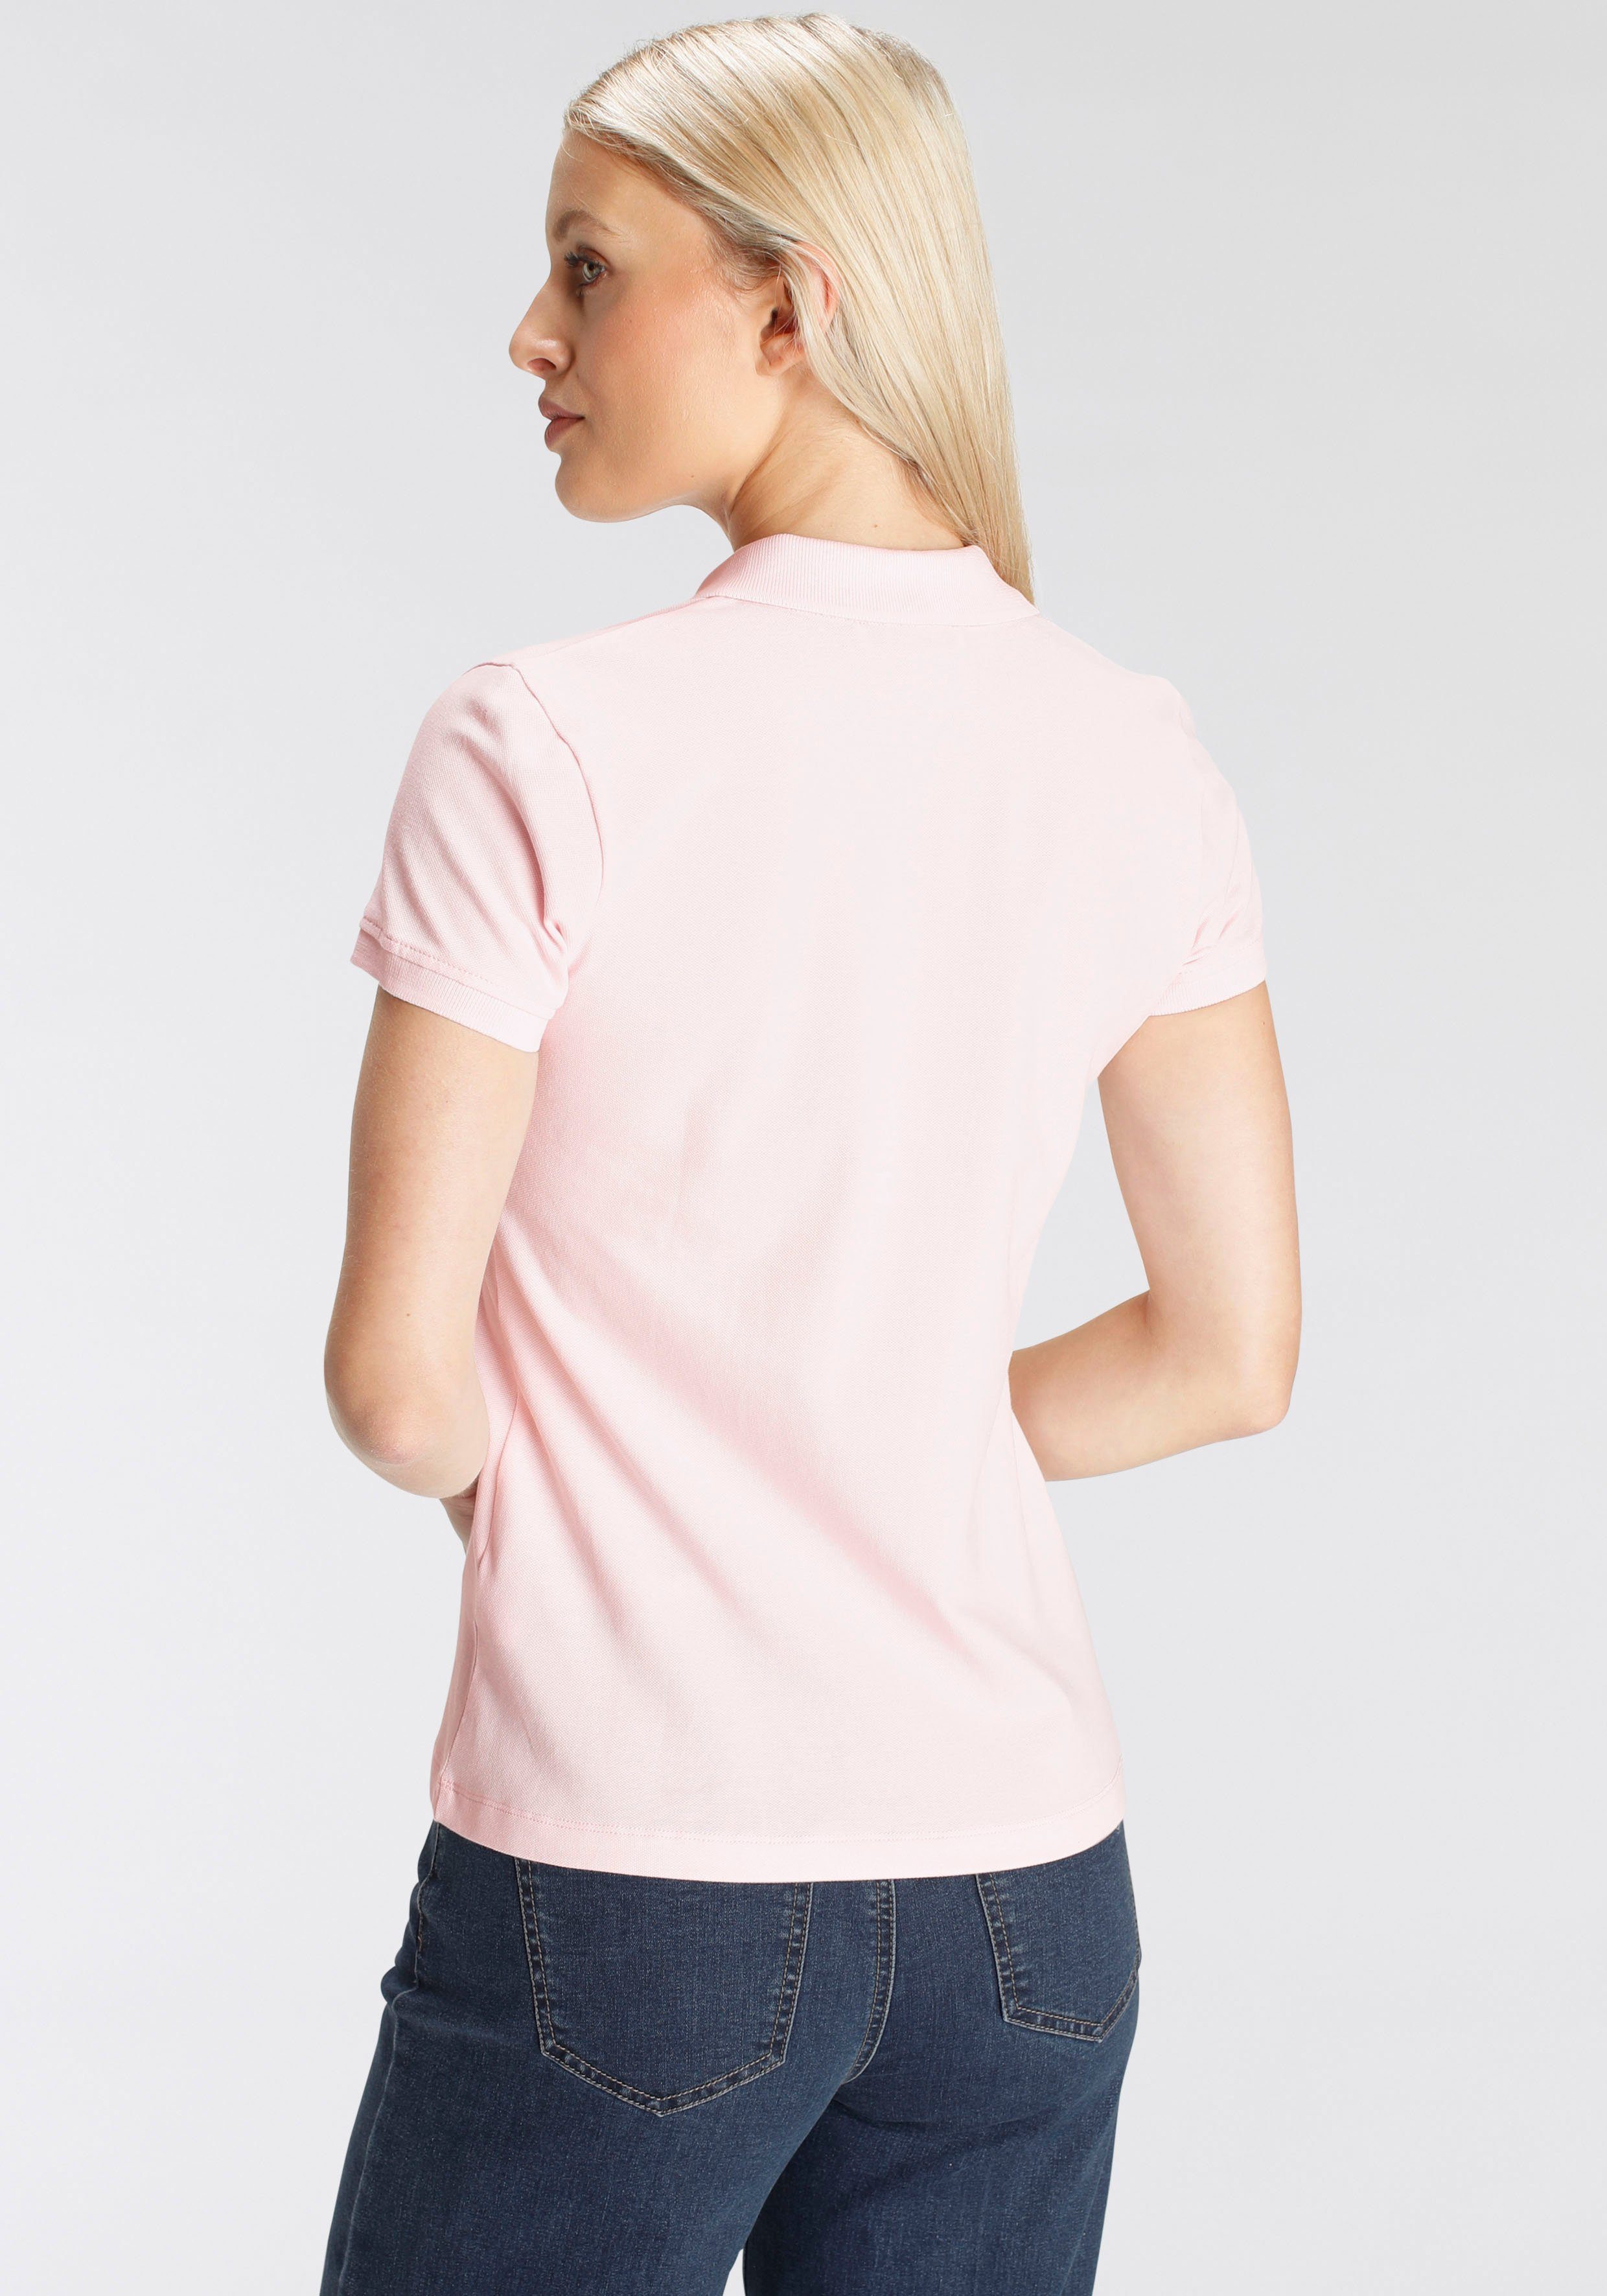 DELMAO Poloshirt in klassischer rosa Form in Farben verschiedenen MARKE! NEUE 